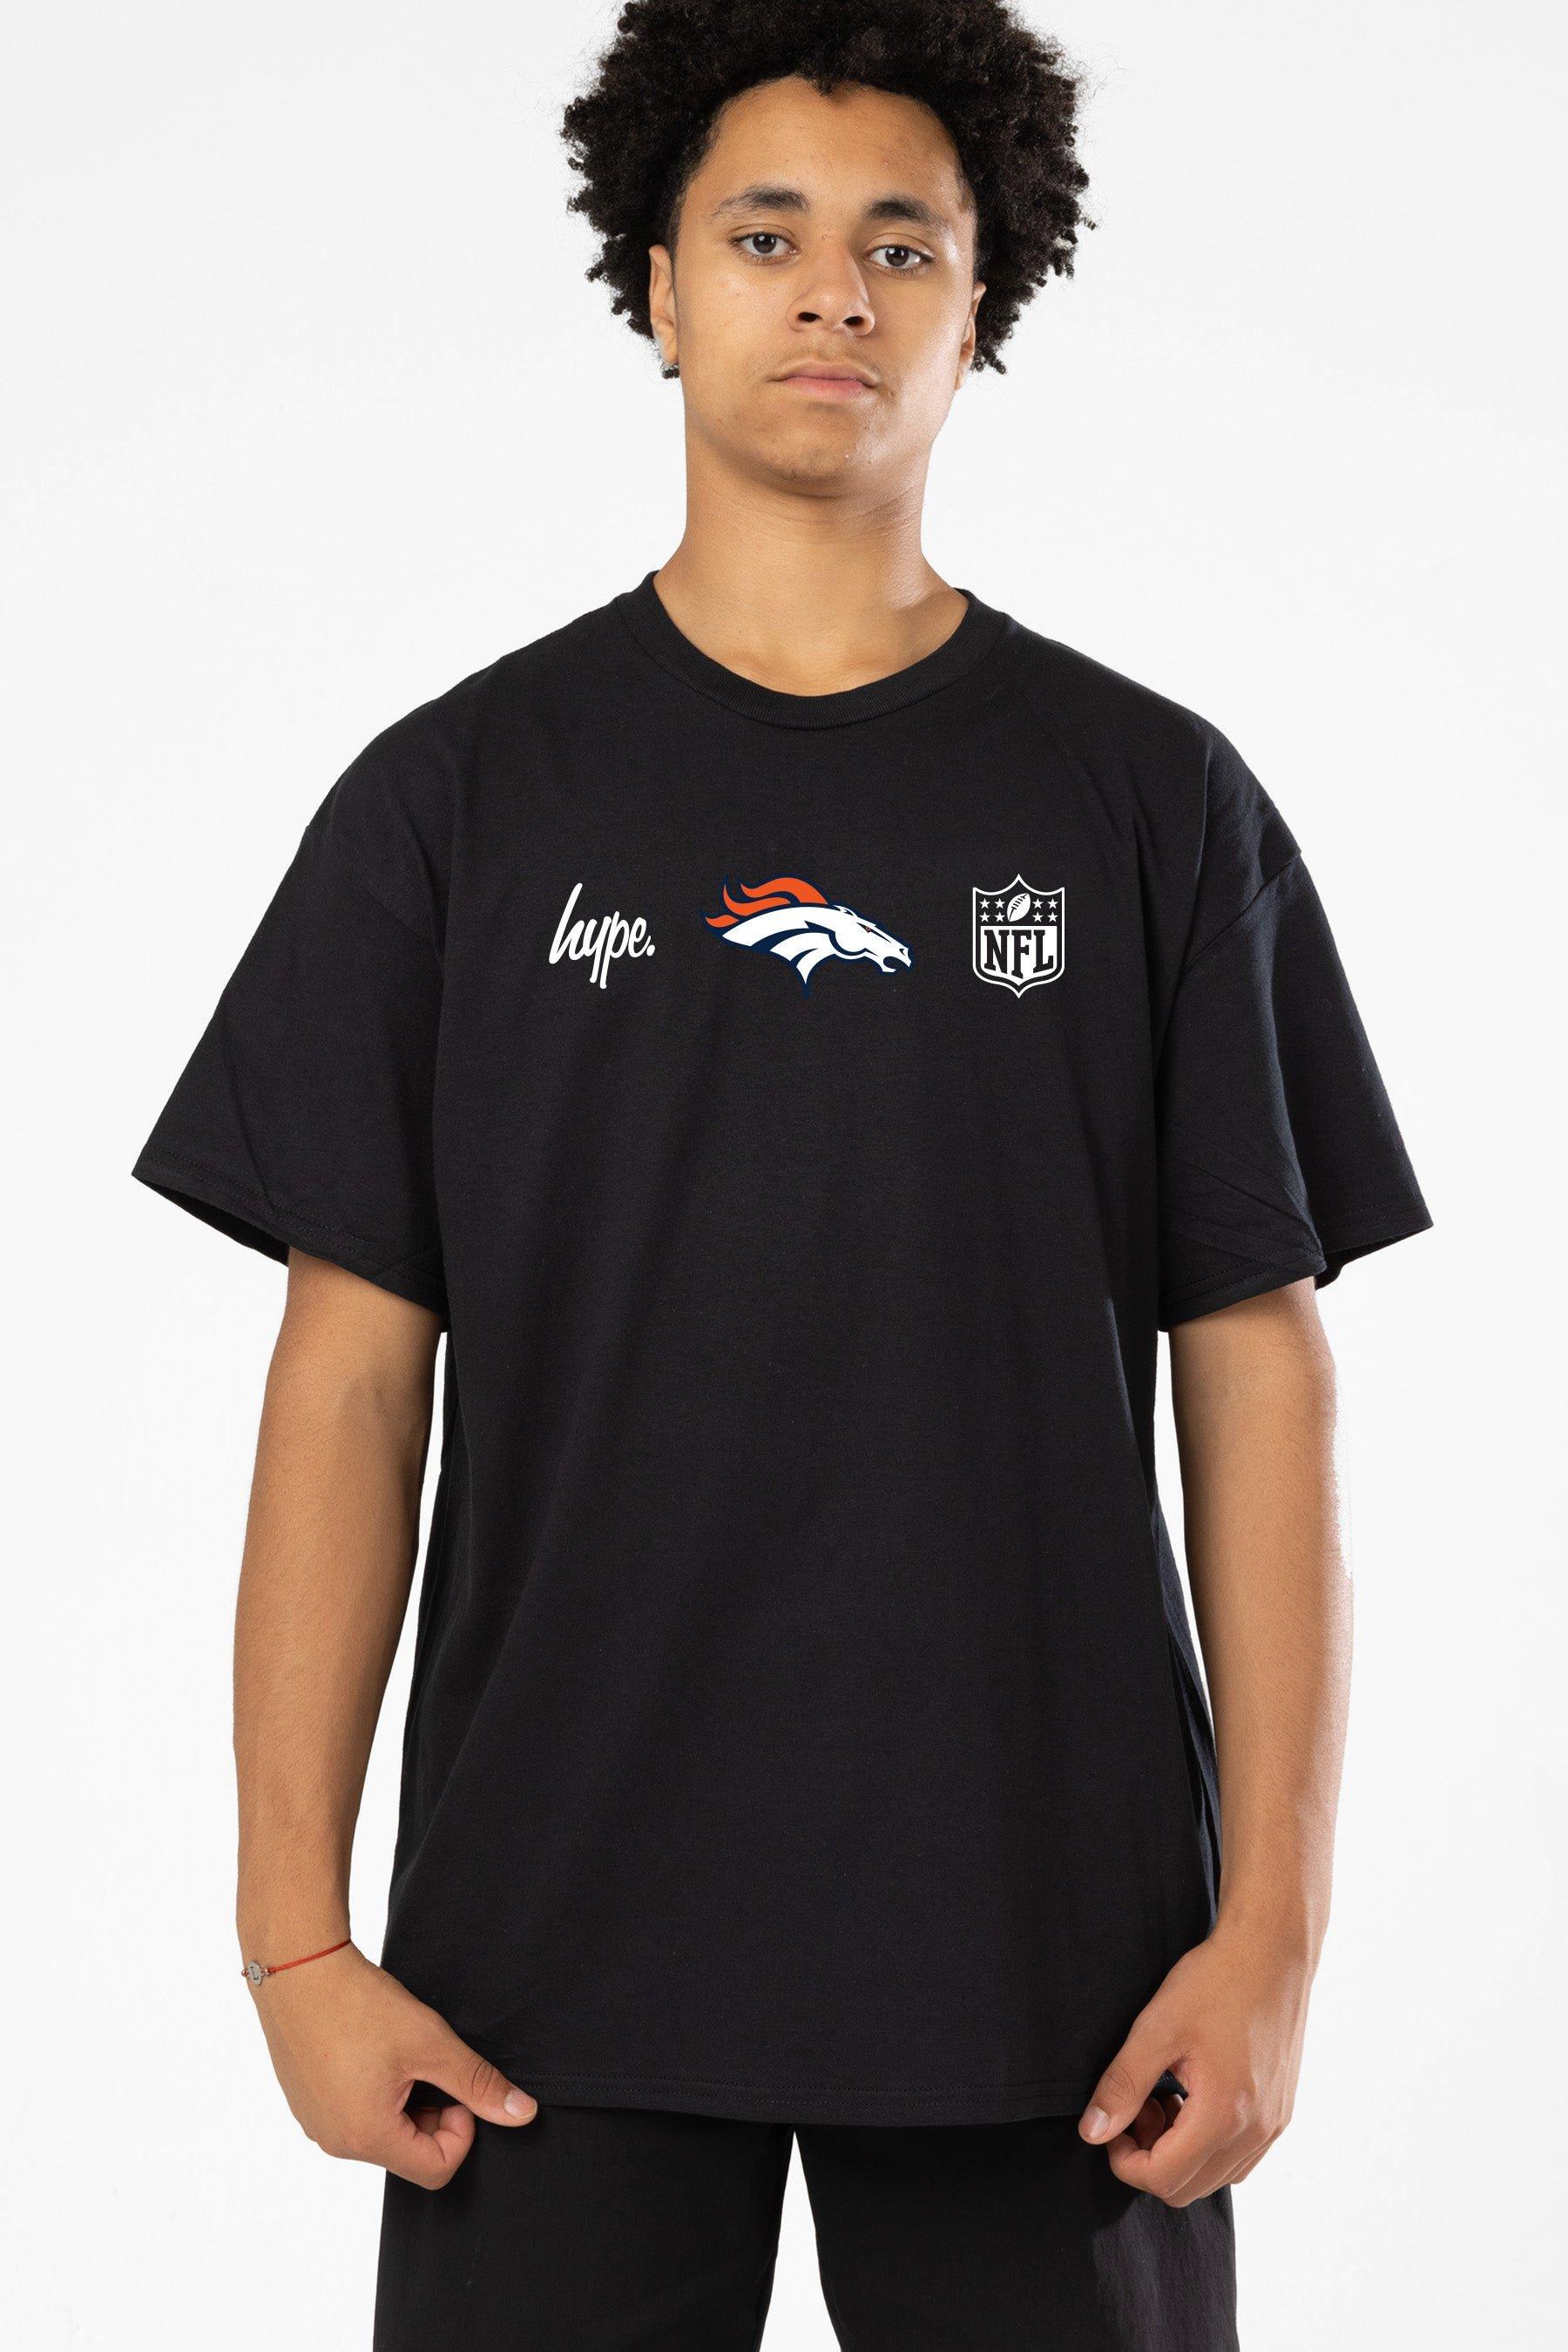 NFL X Denver Broncos T-Shirt